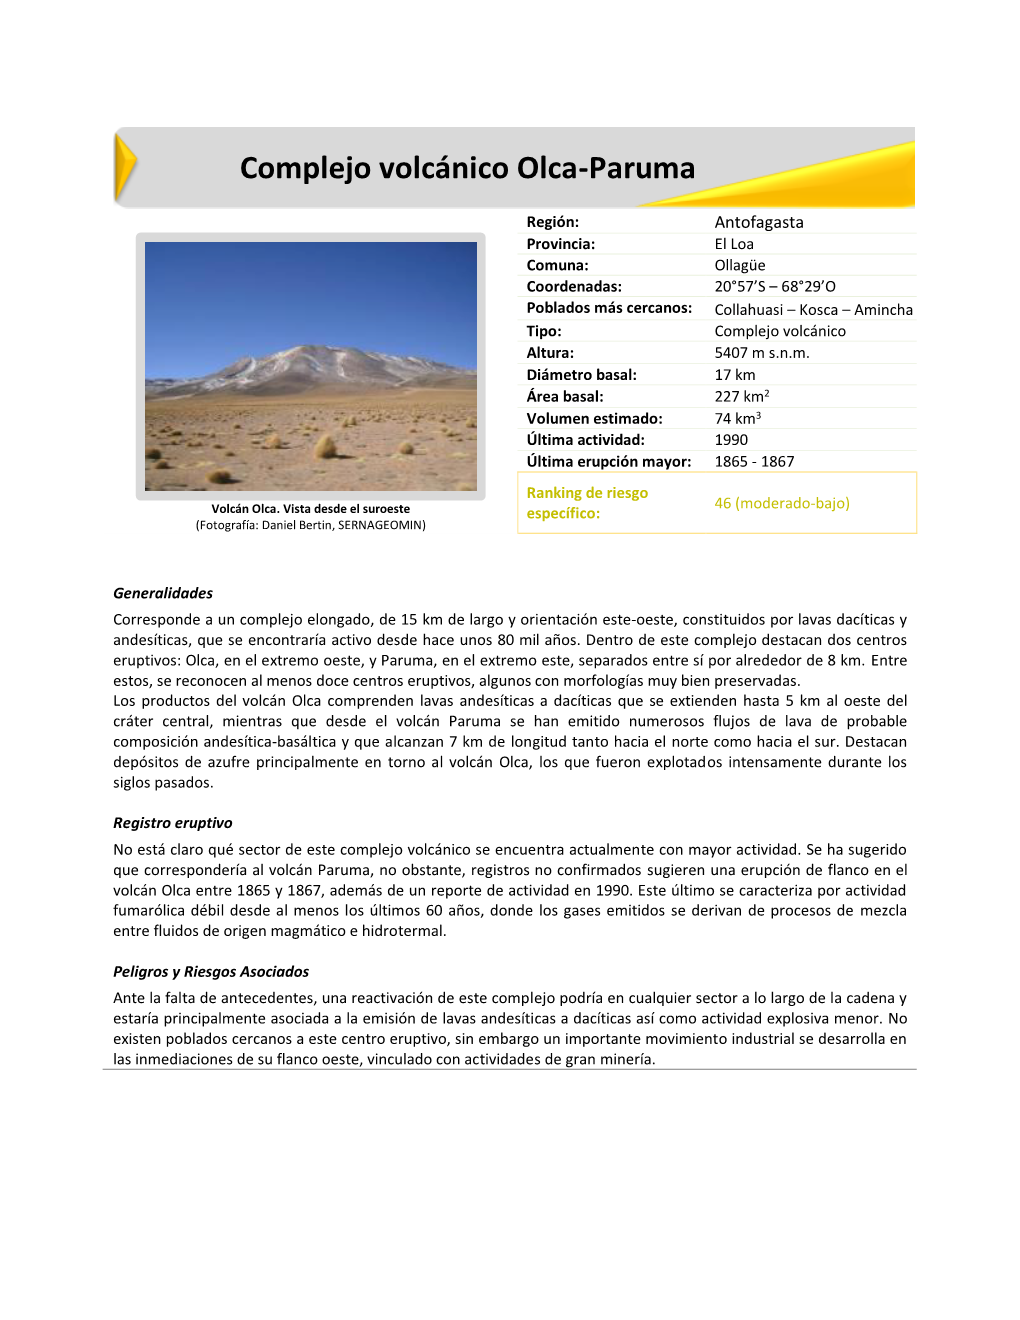 Complejo Volcánico Olca-Paruma